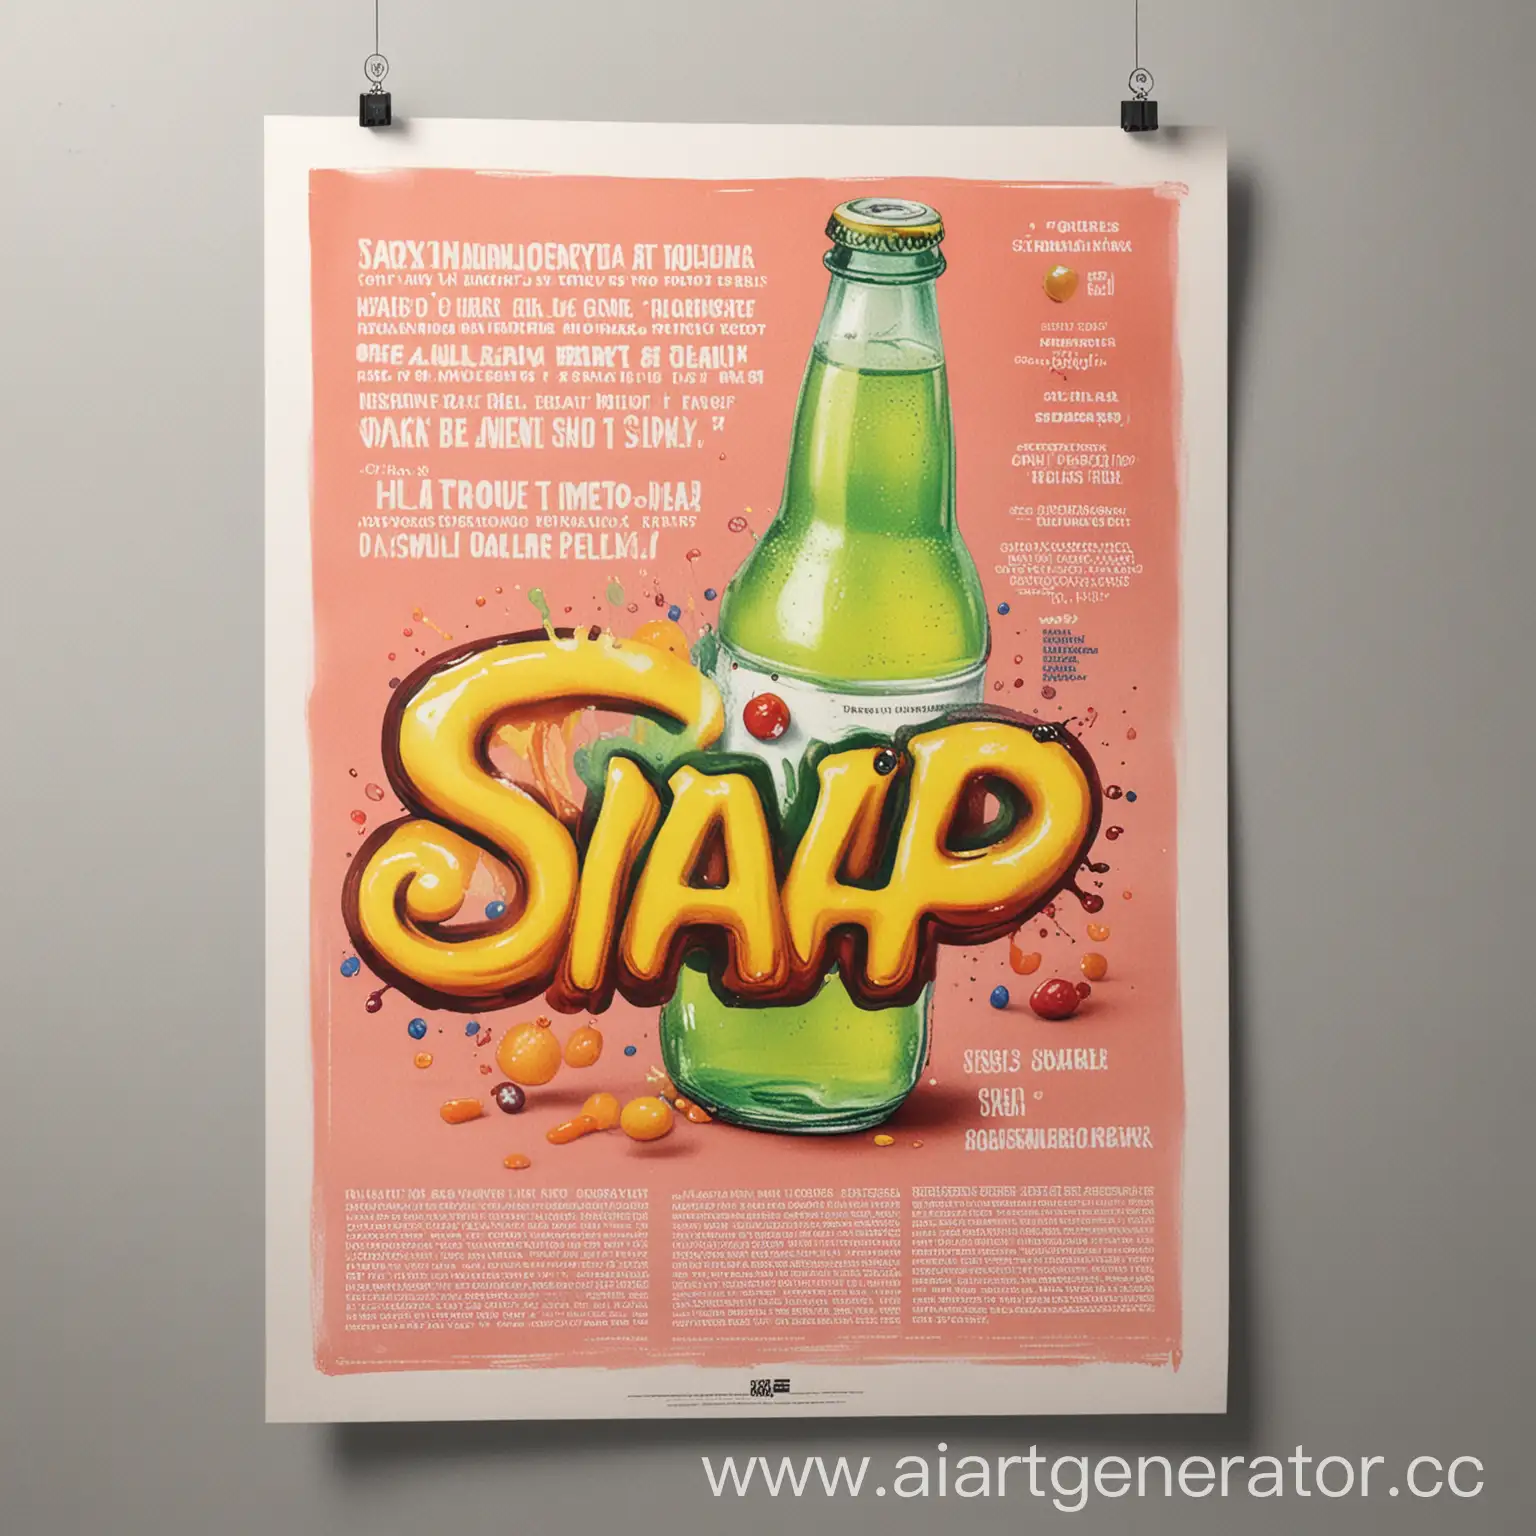 текстура плаката с рекламой газированного напитка "snap"